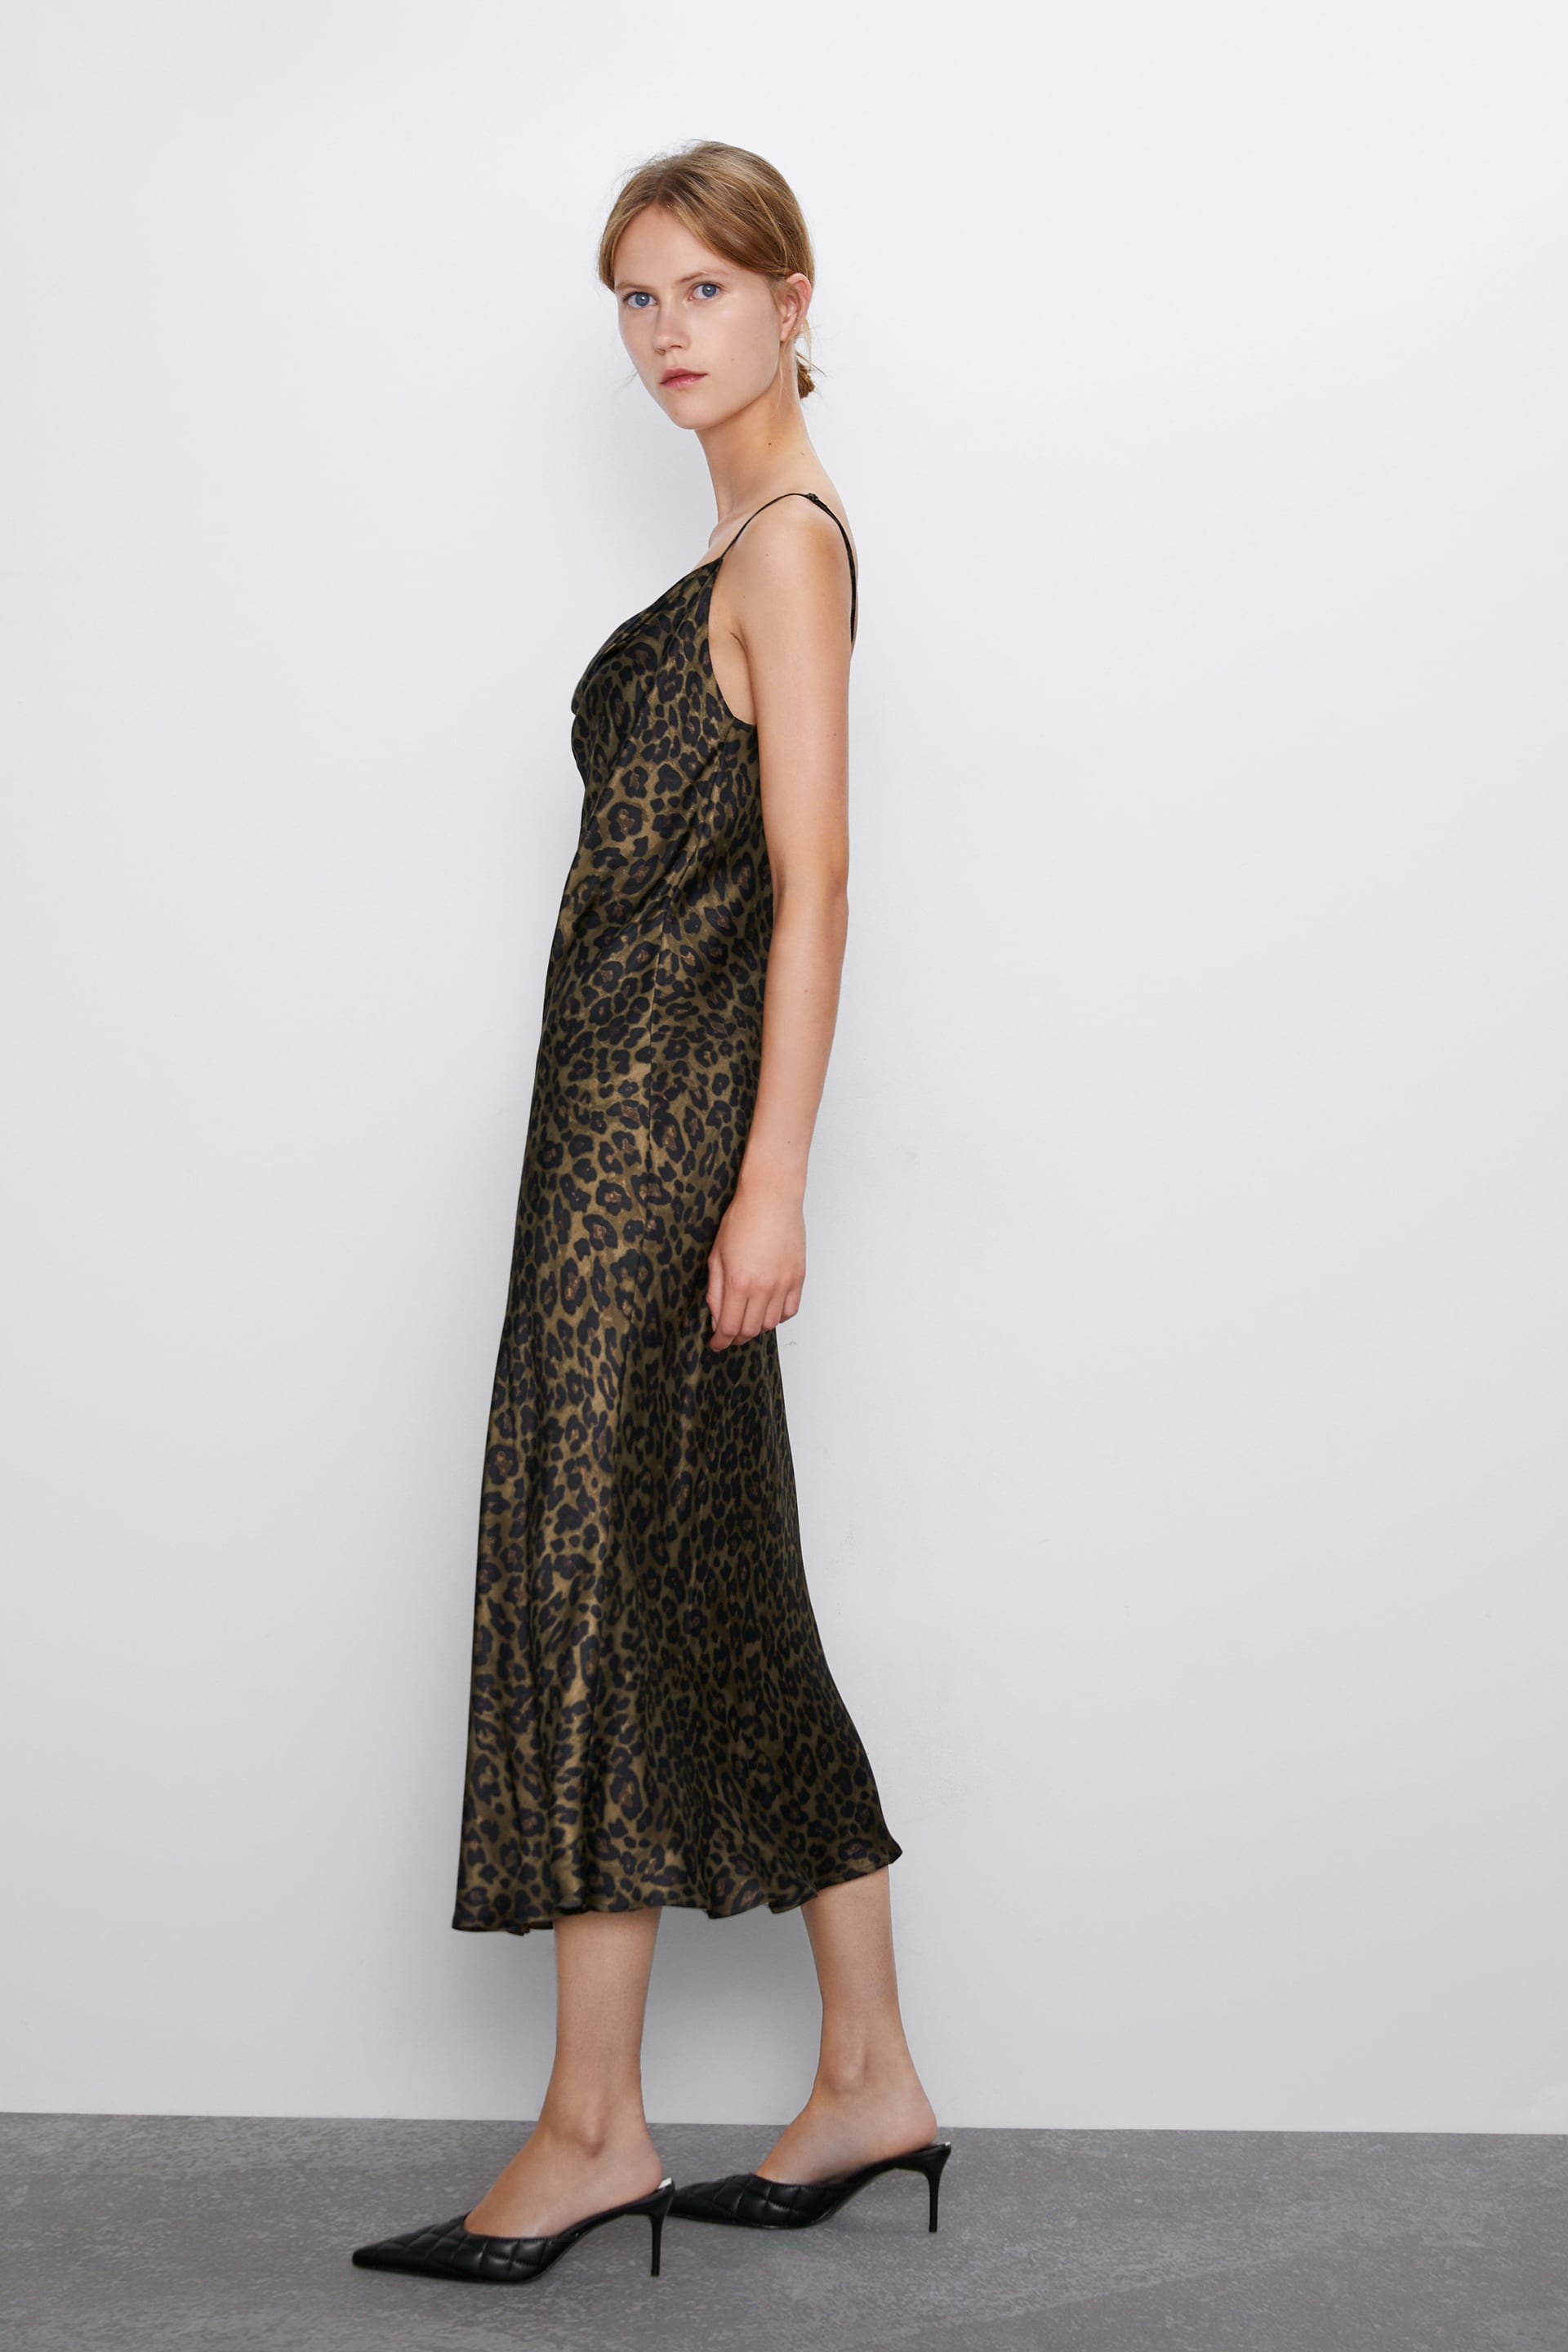 Zara leopard print satin cami dress - new – Manifesto Woman